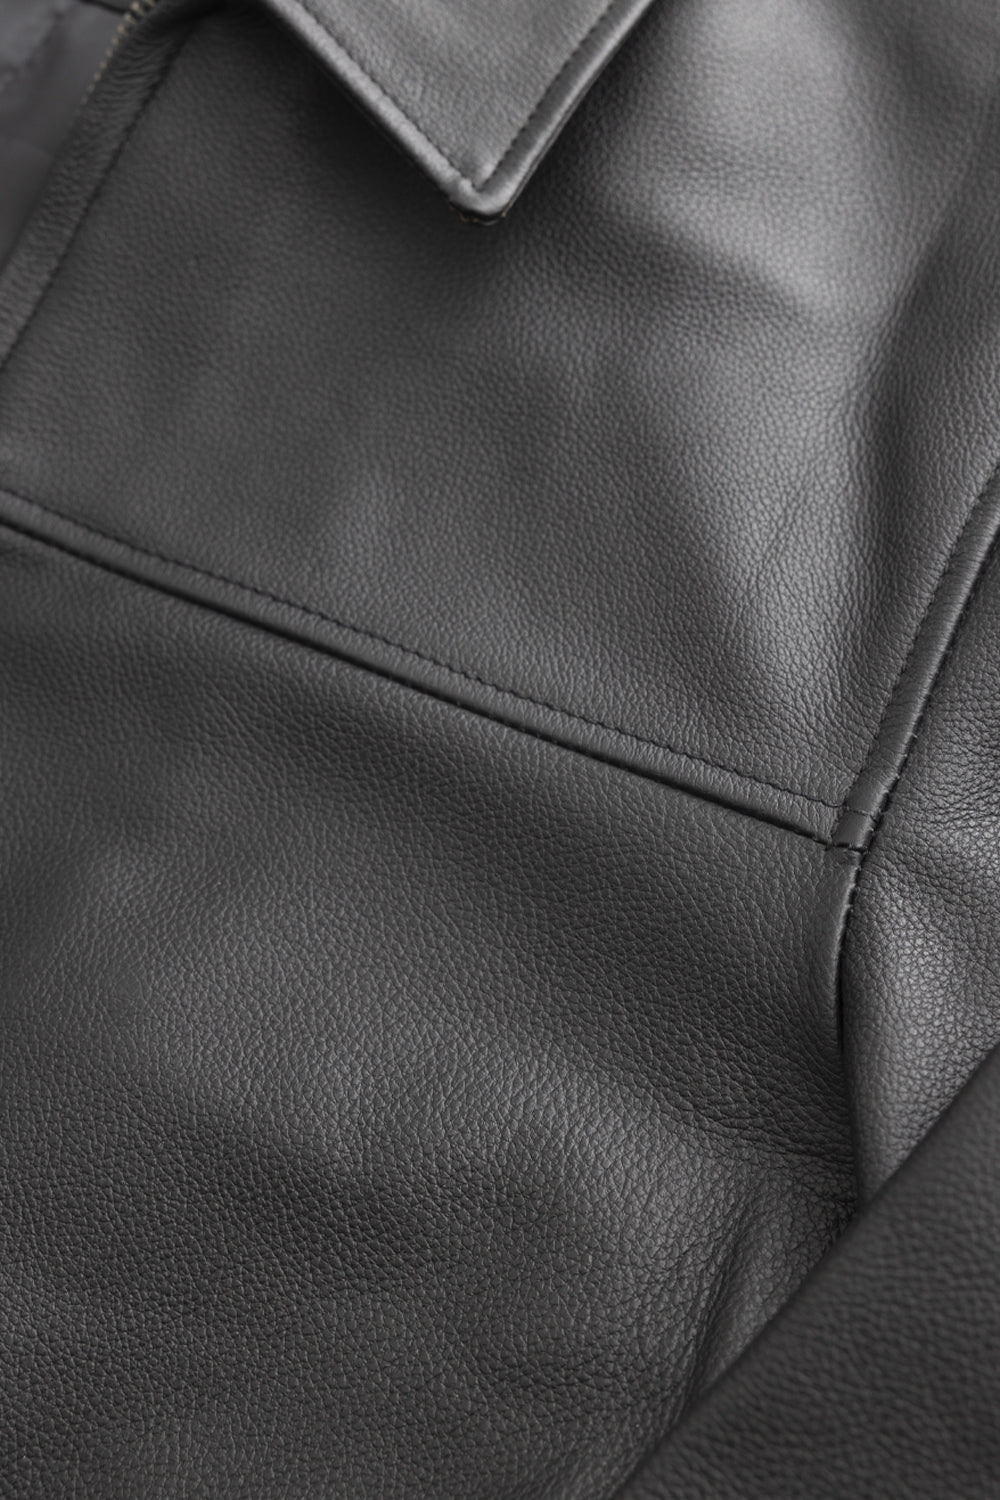 JD Men's Leather Jacket